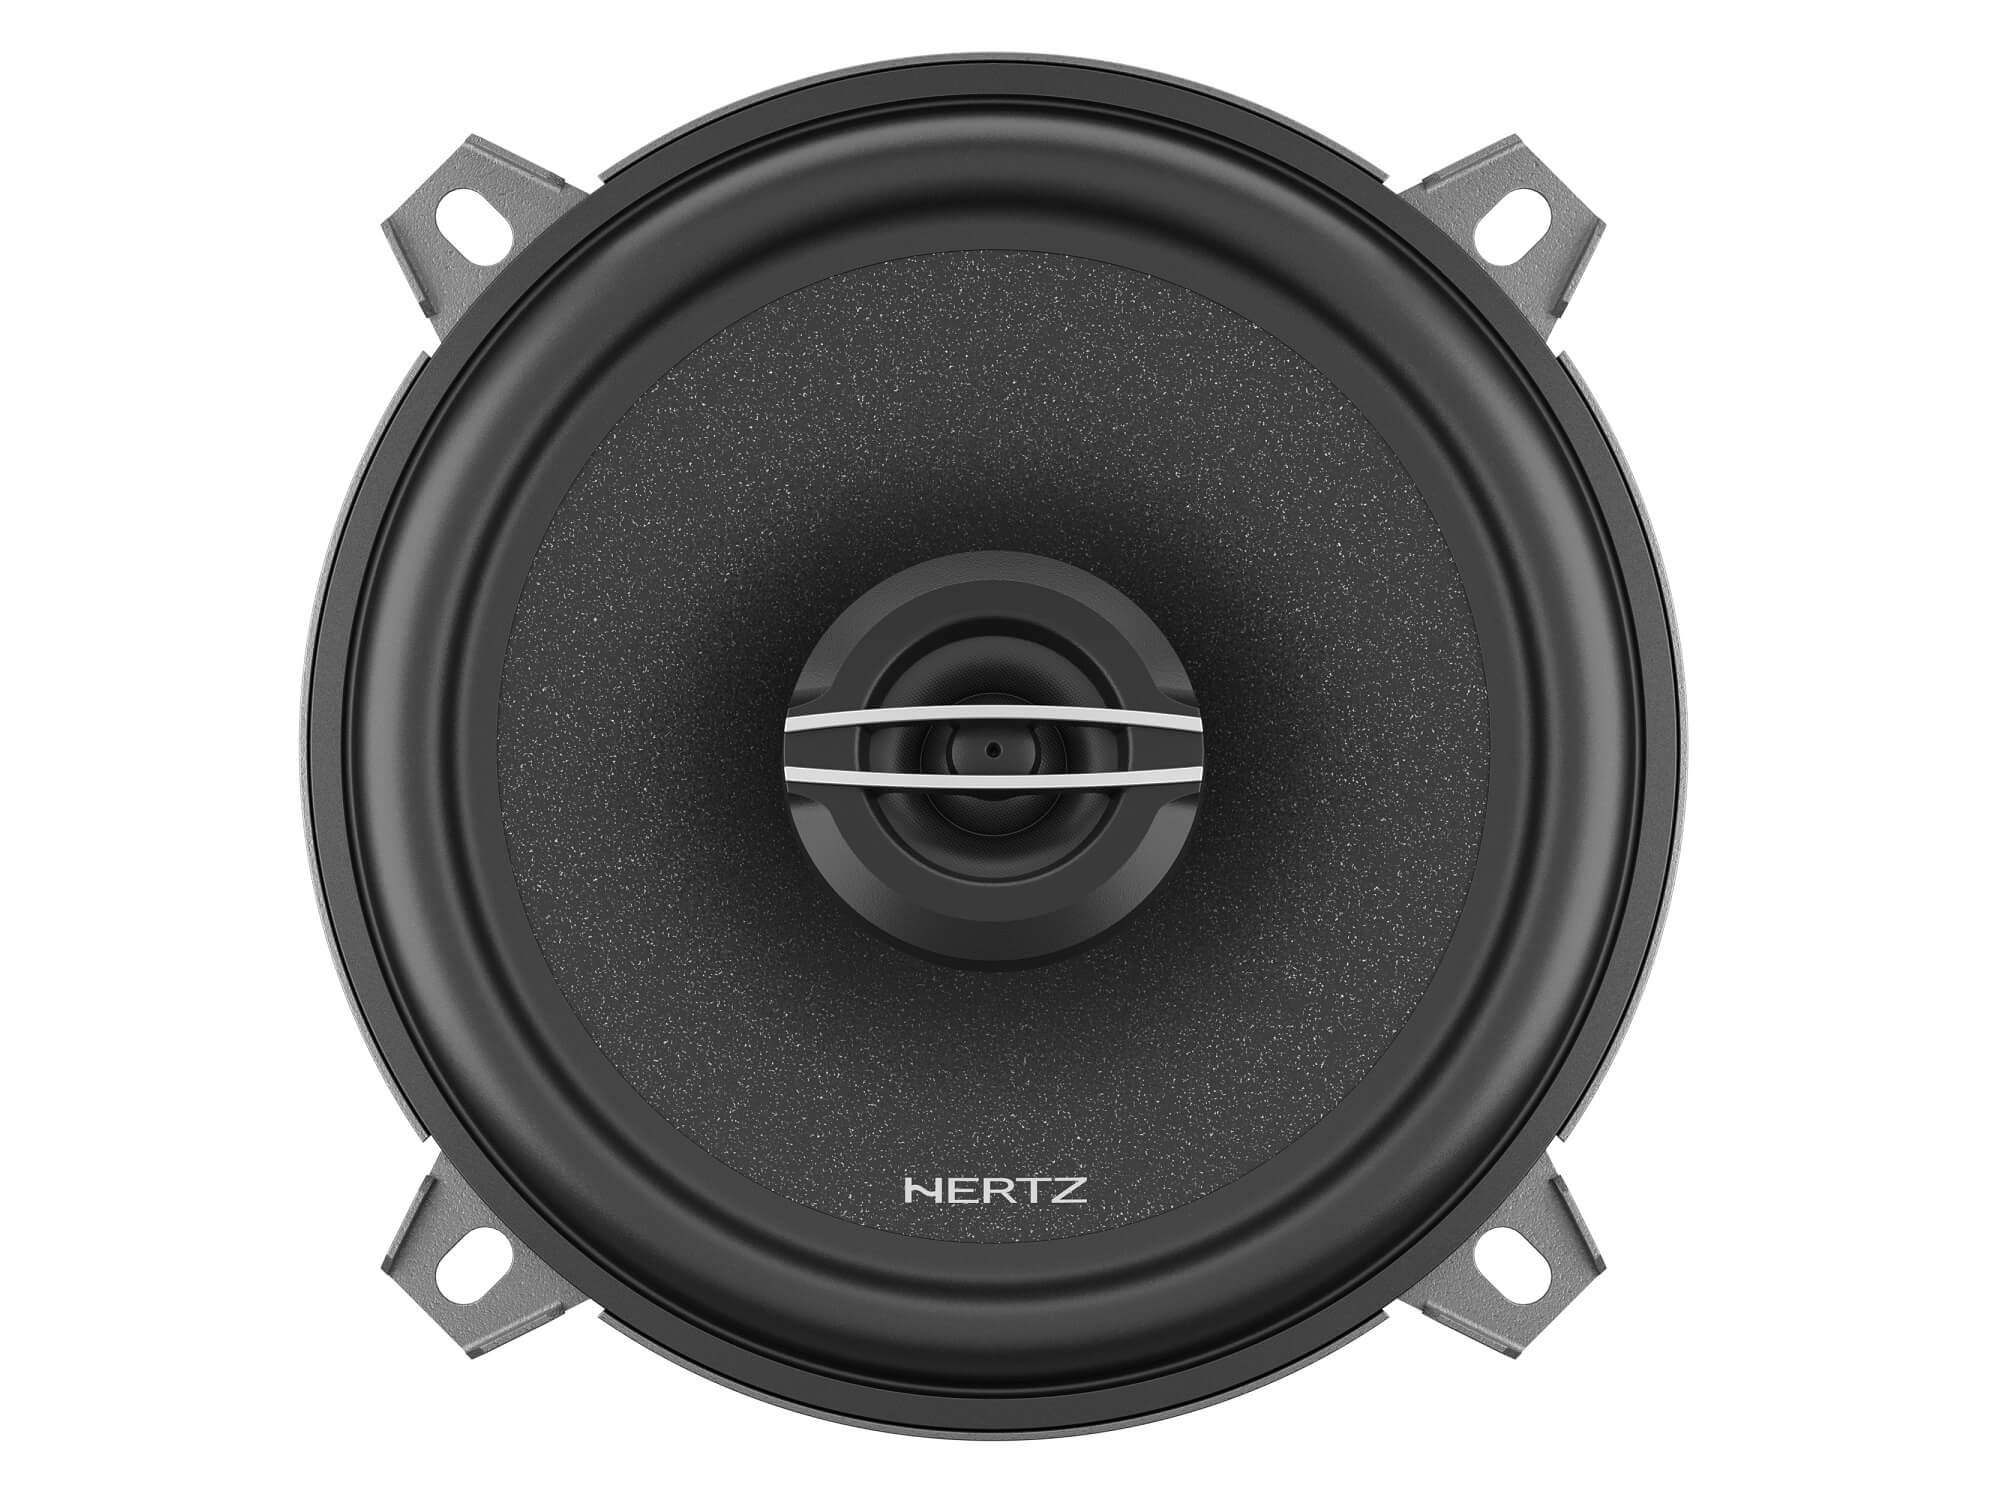 Hertz Cento CX 130 - Top